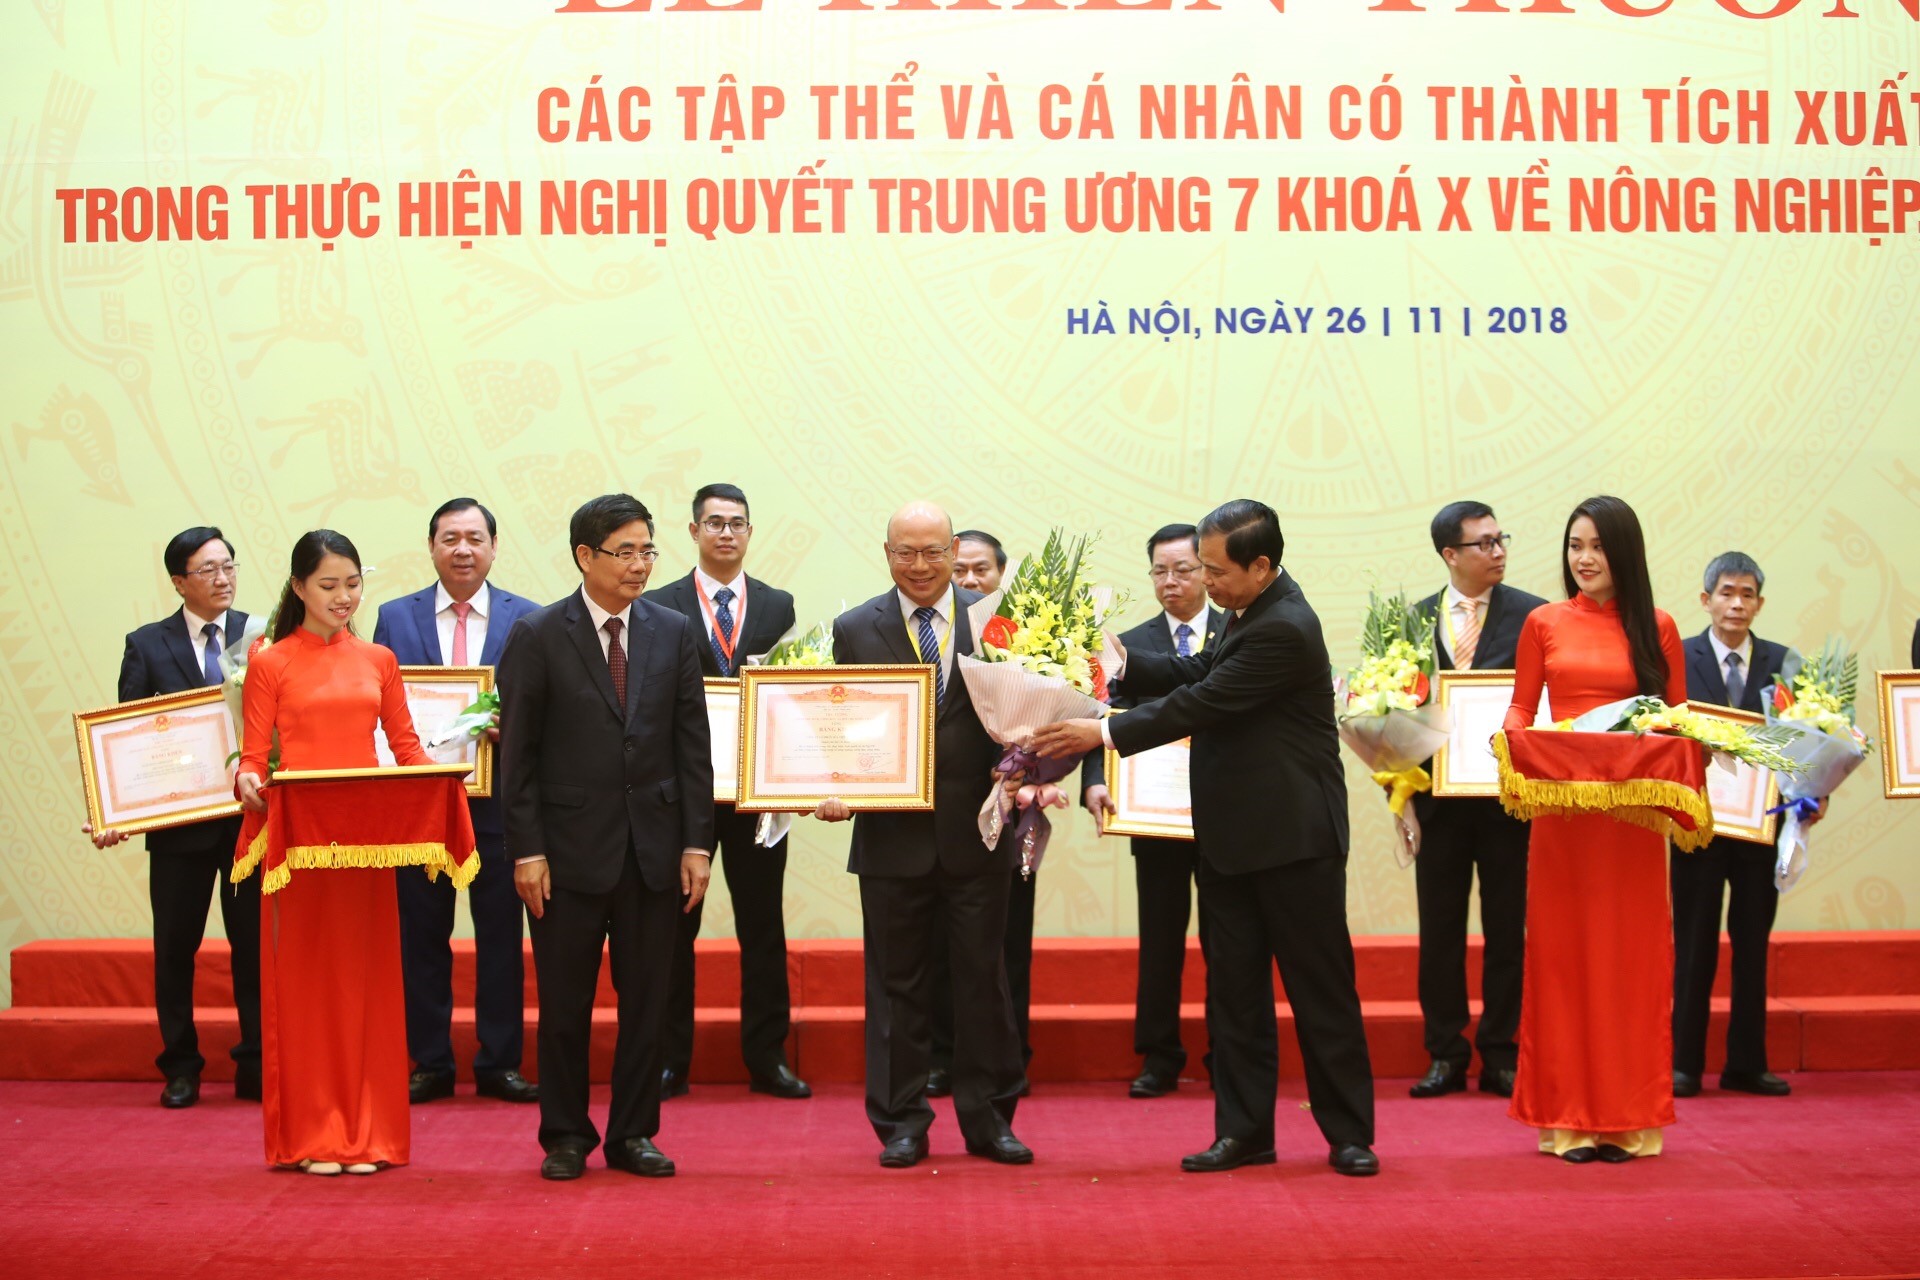 Ông Trịnh Quốc Dũng, Giám đốc Điều hành Vinamilk nhận bằng khen và hoa từ ông Cao Đức Phát, Phó Trưởng ban thường trực Ban Kinh tế Trung ương và ông Nguyễn Xuân Cường, Bộ trưởng Bộ Nông nghiệp và Phát triển nông thôn.